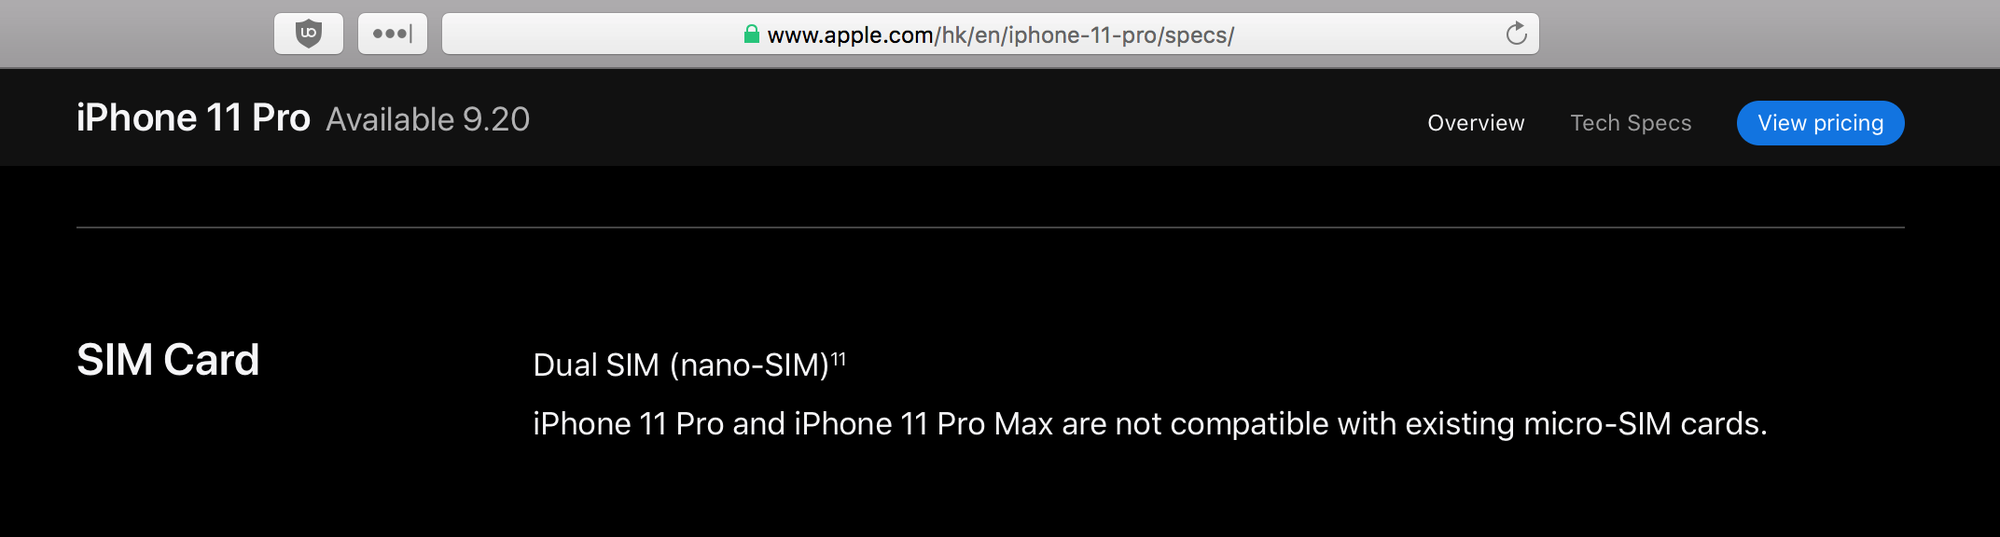 Tin vui cho người
dùng iPhone 2 SIM: iPhone 11 Pro 5.8 inch vẫn sẽ có phiên
bản 2 SIM vật lý